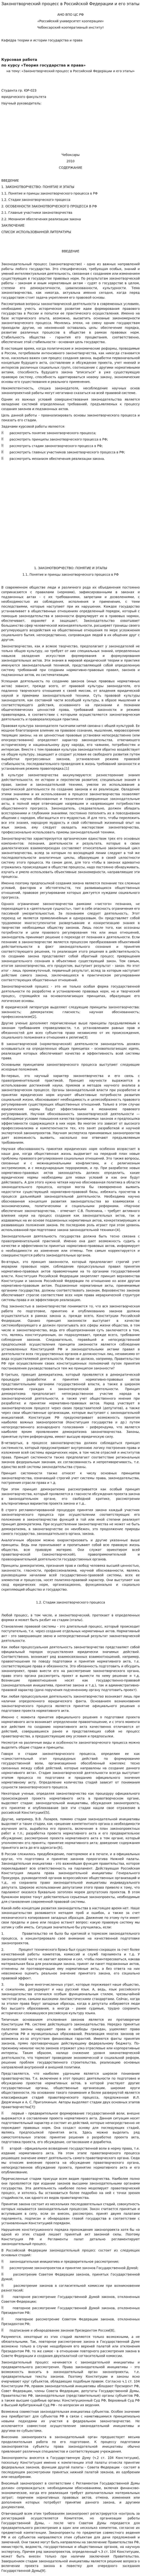 Законотворческий процесс в Российской Федерации и его этапы